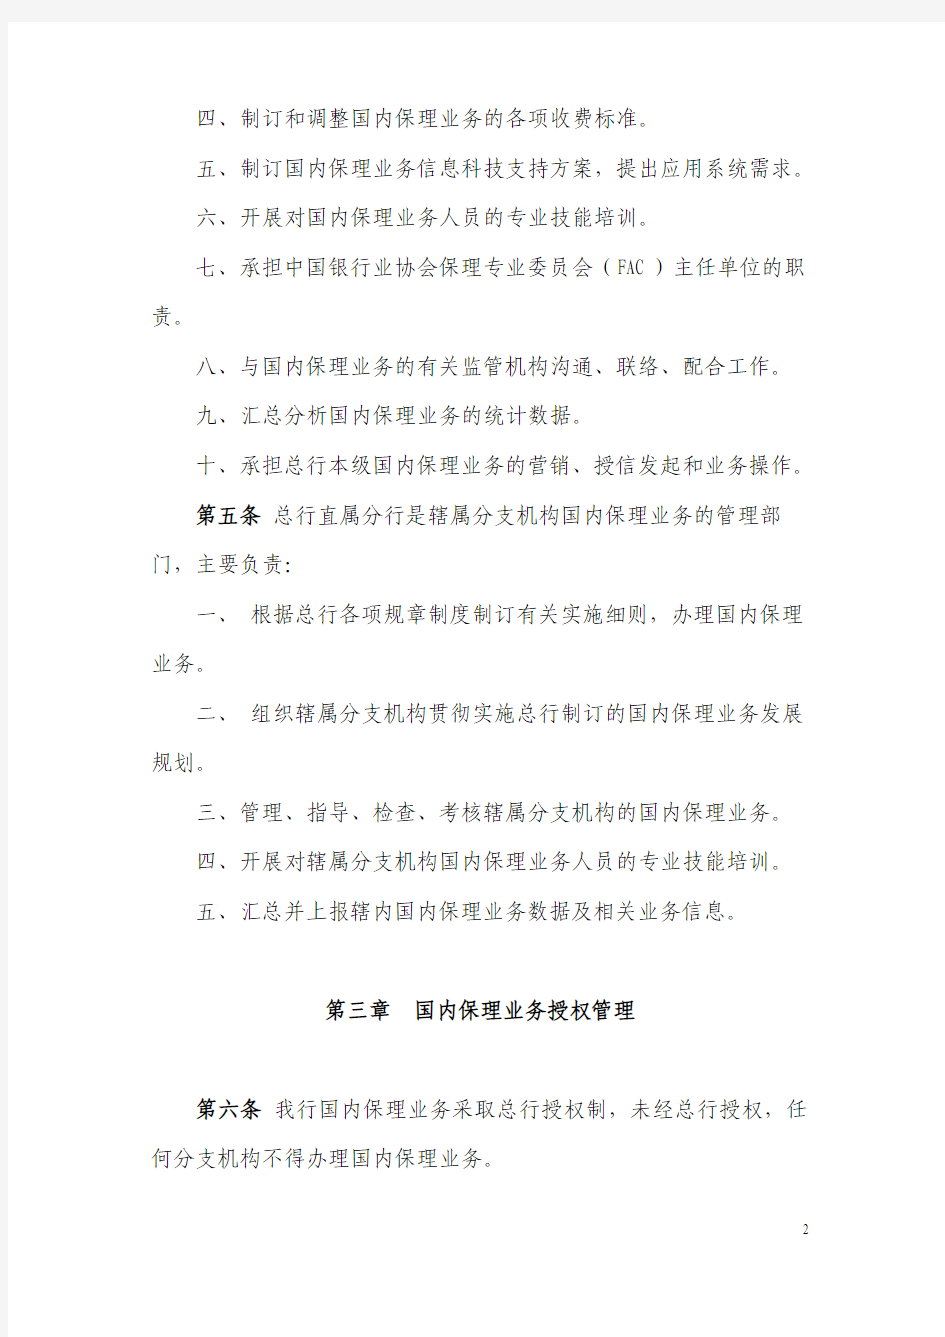 中国银行股份有限公司国内保理业务基本规定(2010年版)